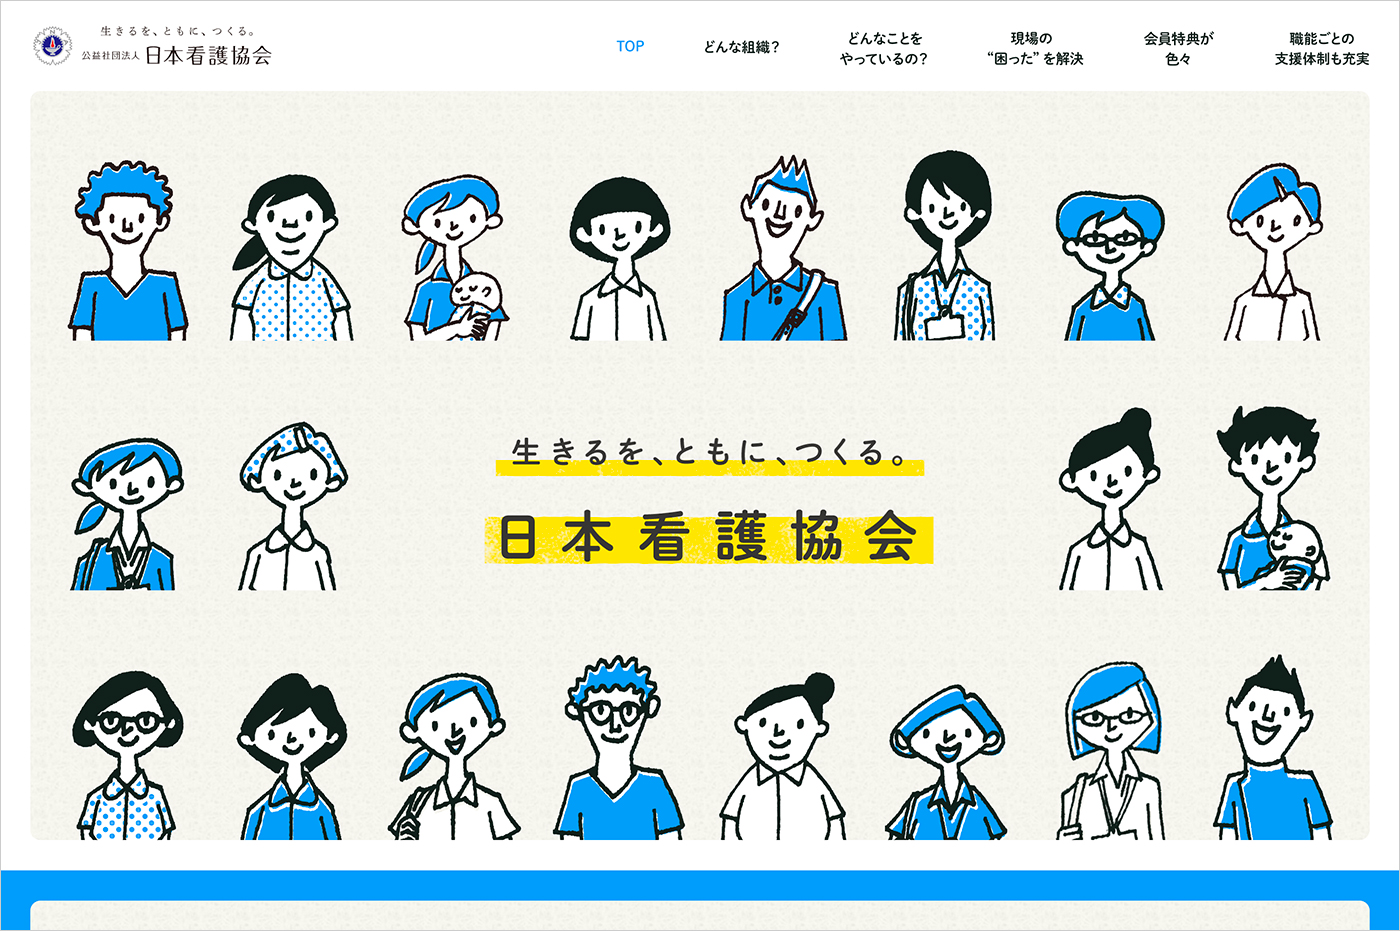 入会のご案内 | 看護協会ウェブサイトの画面キャプチャ画像